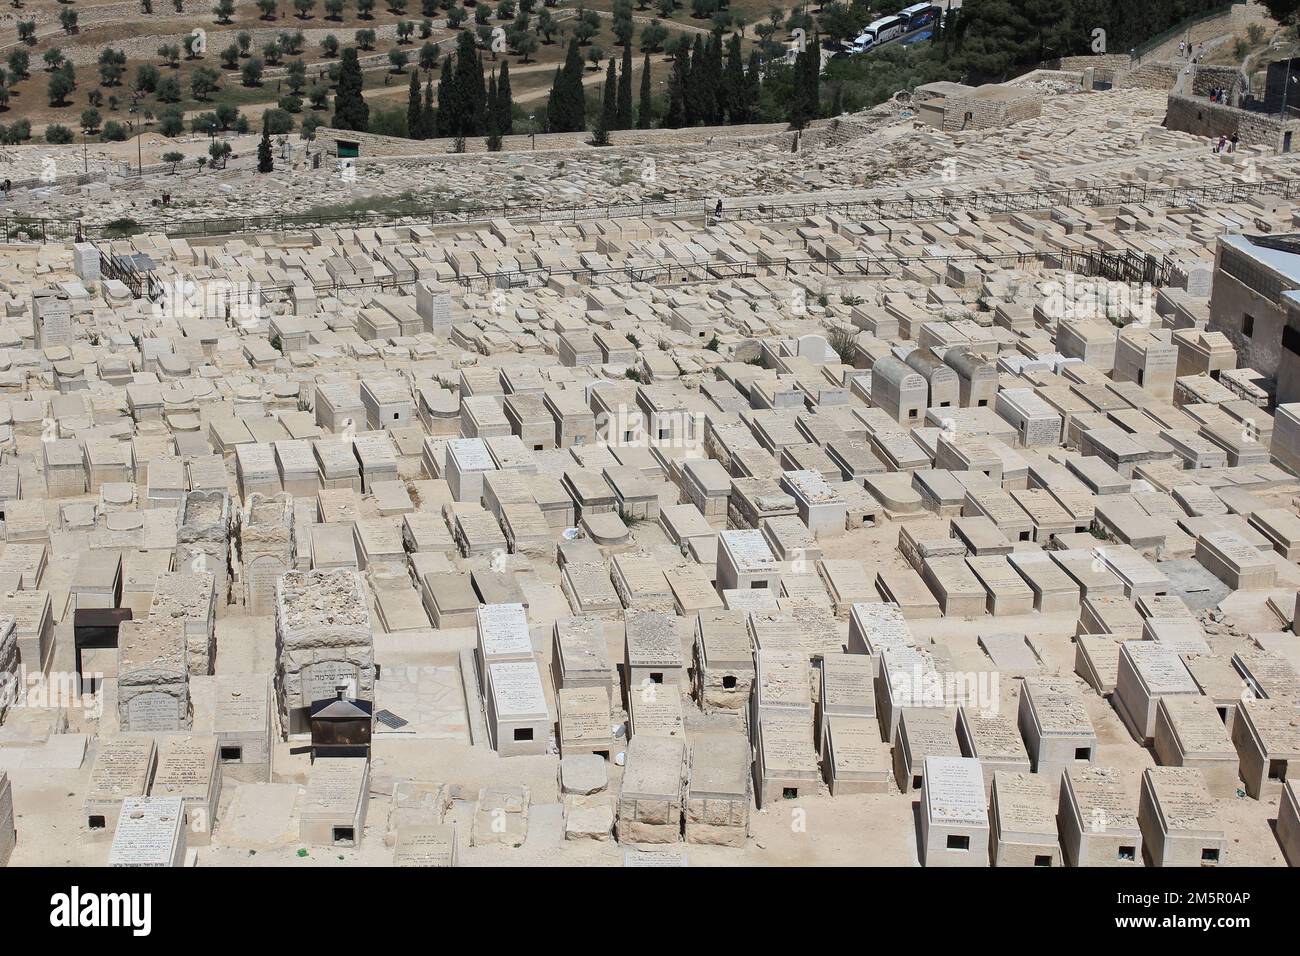 GERUSALEMME, ISRAELE - 11 MAGGIO 2011: Questo è un antico cimitero ebraico sul Monte degli Ulivi. Foto Stock